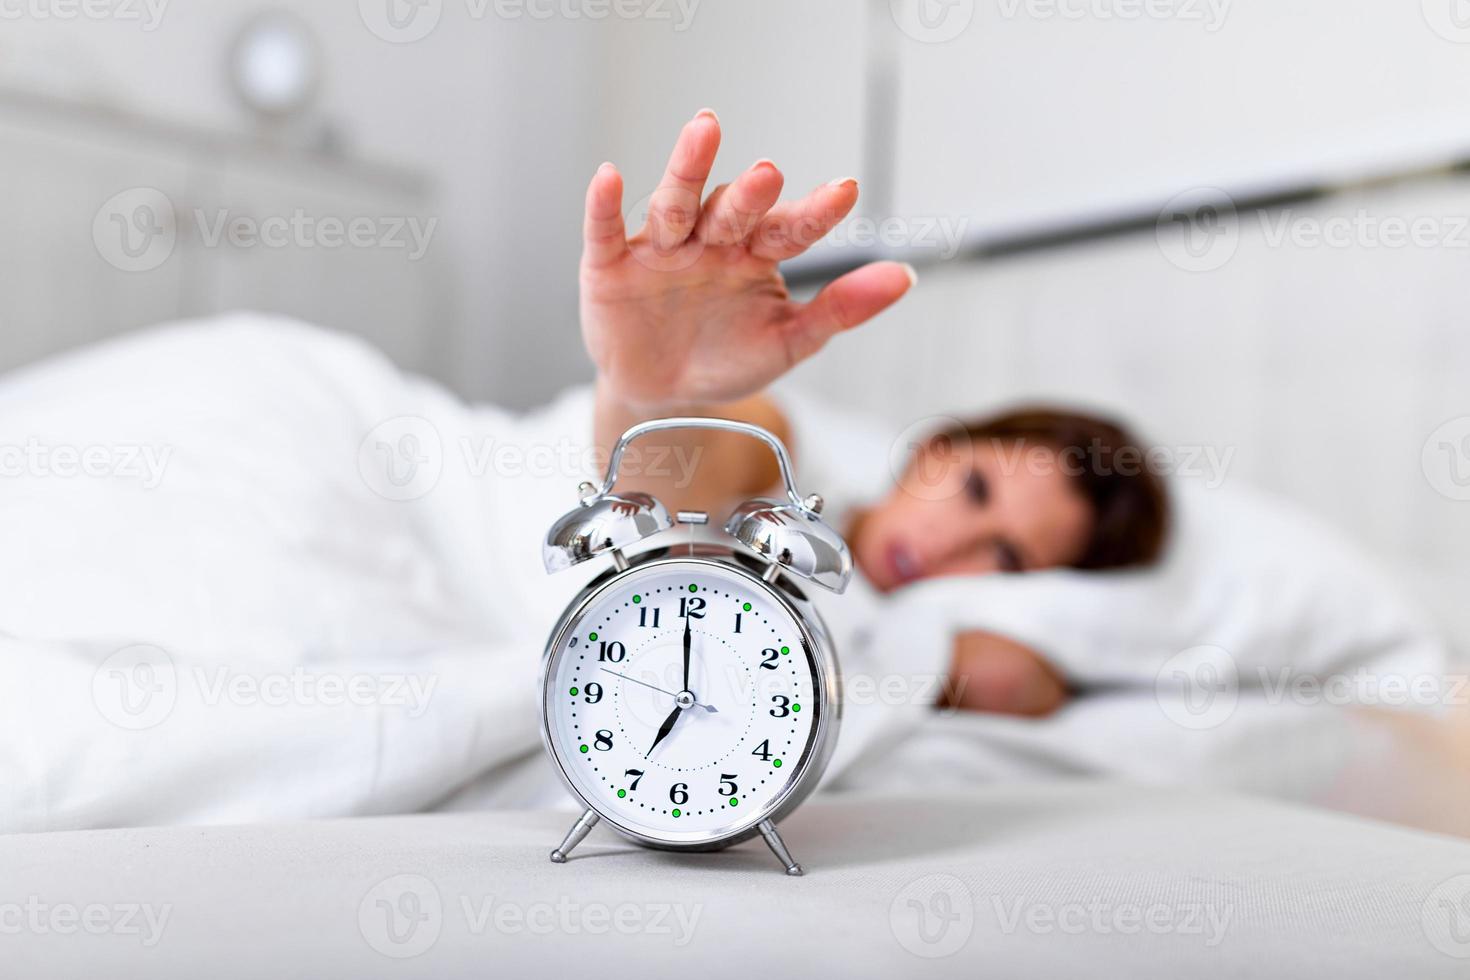 femme allongée dans son lit éteignant un réveil le matin à 7h. la main éteint le réveil en se réveillant le matin, la fille éteint le réveil en se réveillant le matin après un appel. photo